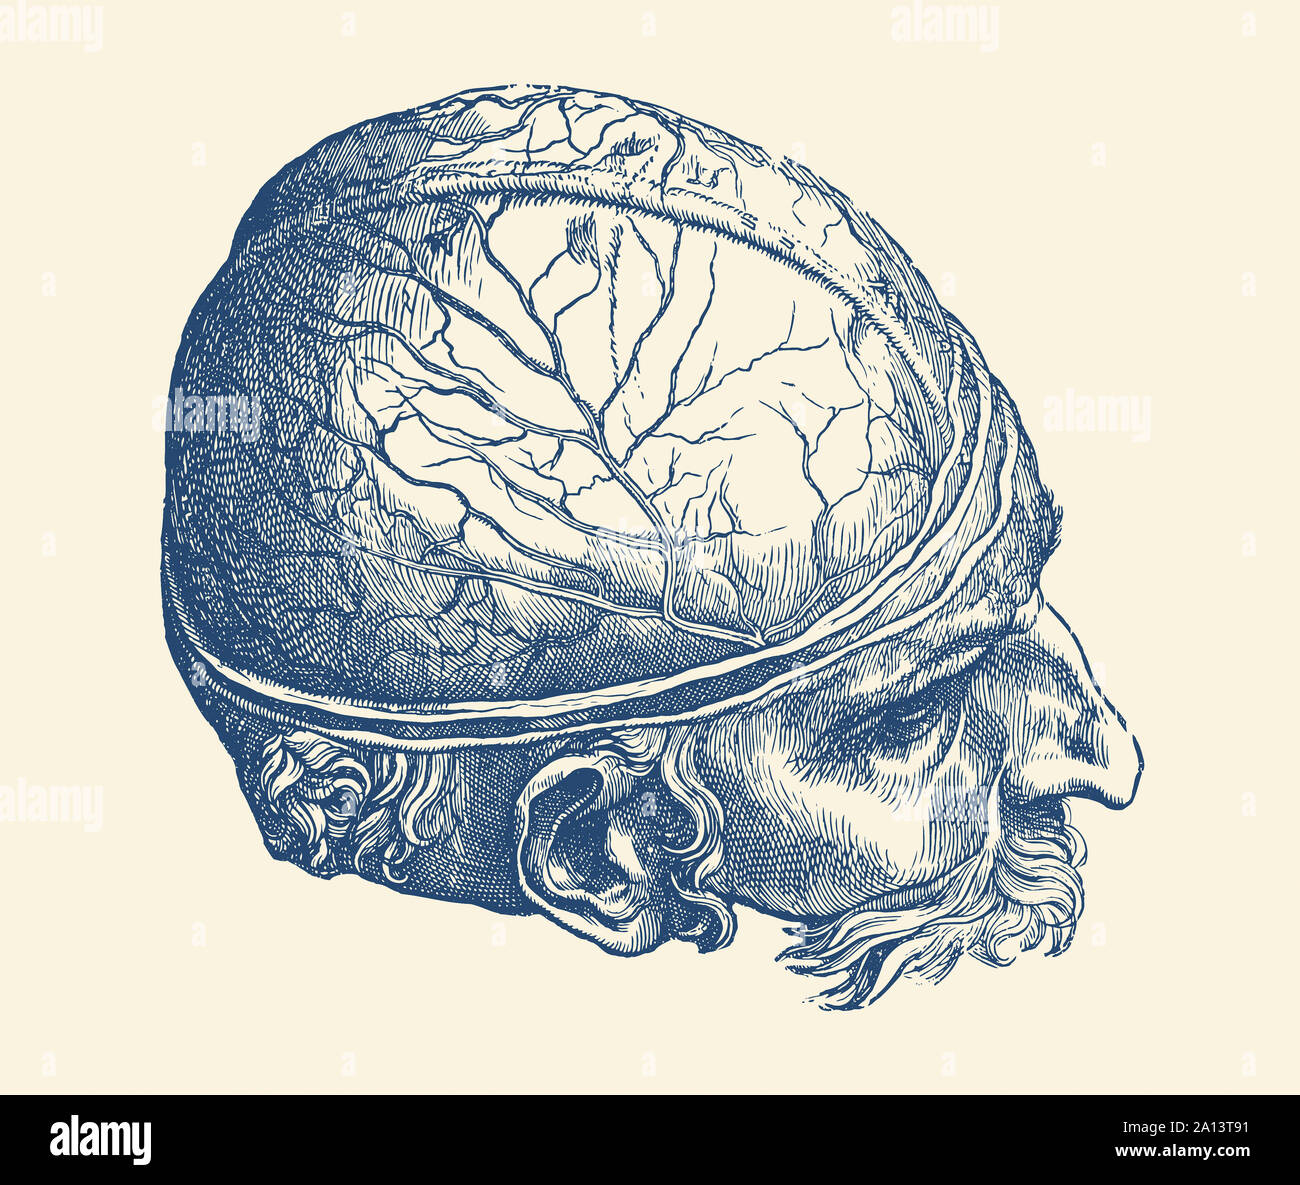 Anatomia Vintage Print offre una rappresentazione artistica del cervello maschile. Foto Stock